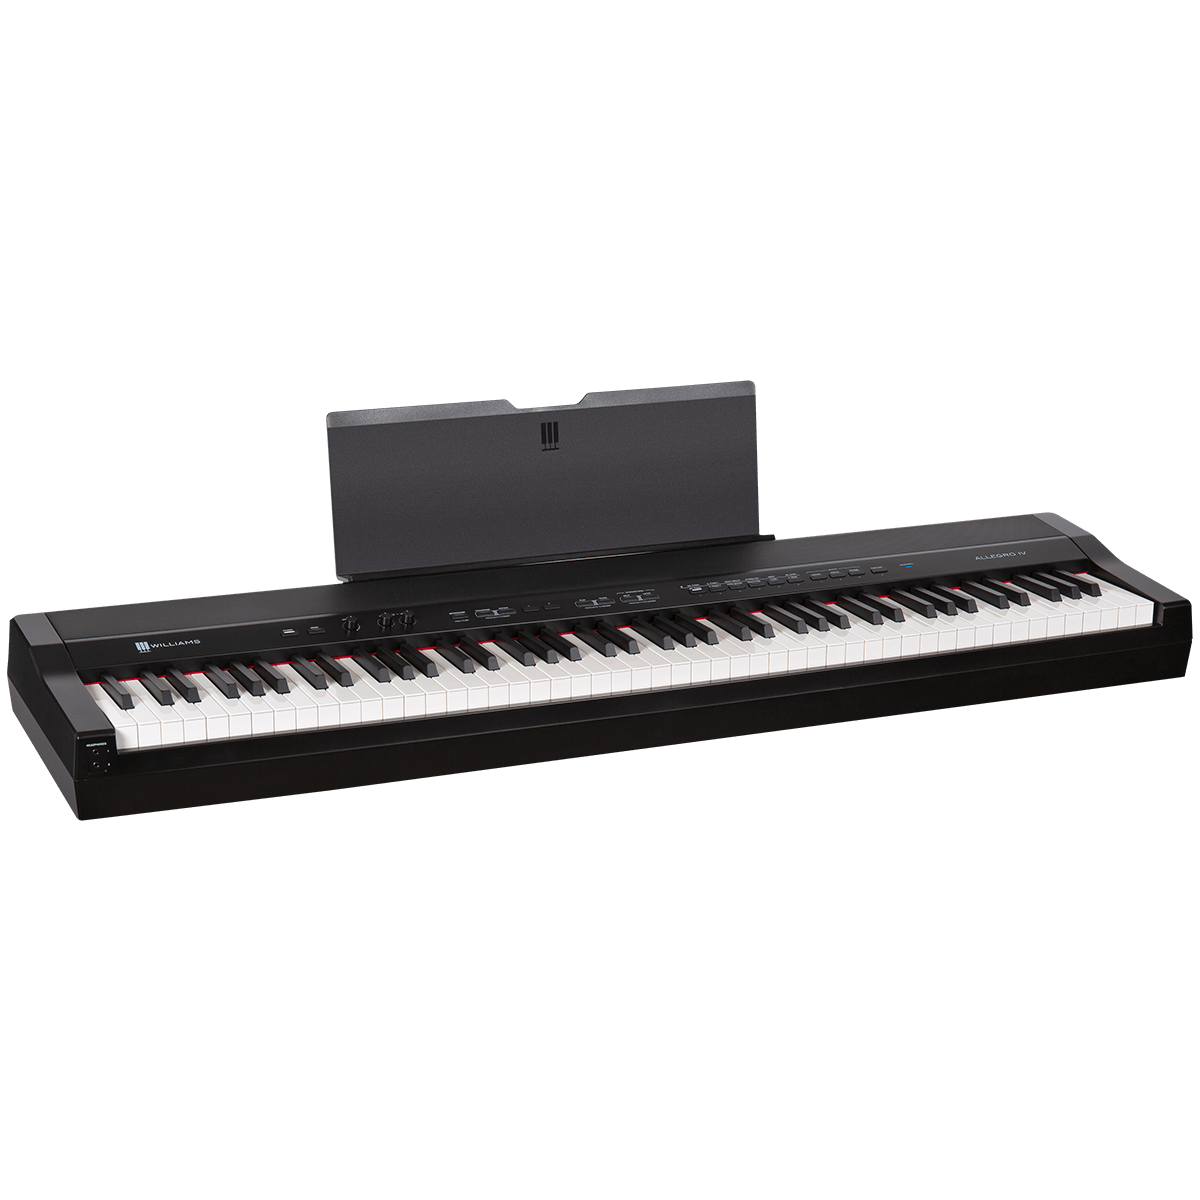 Williams Allegro IV portable digital piano.